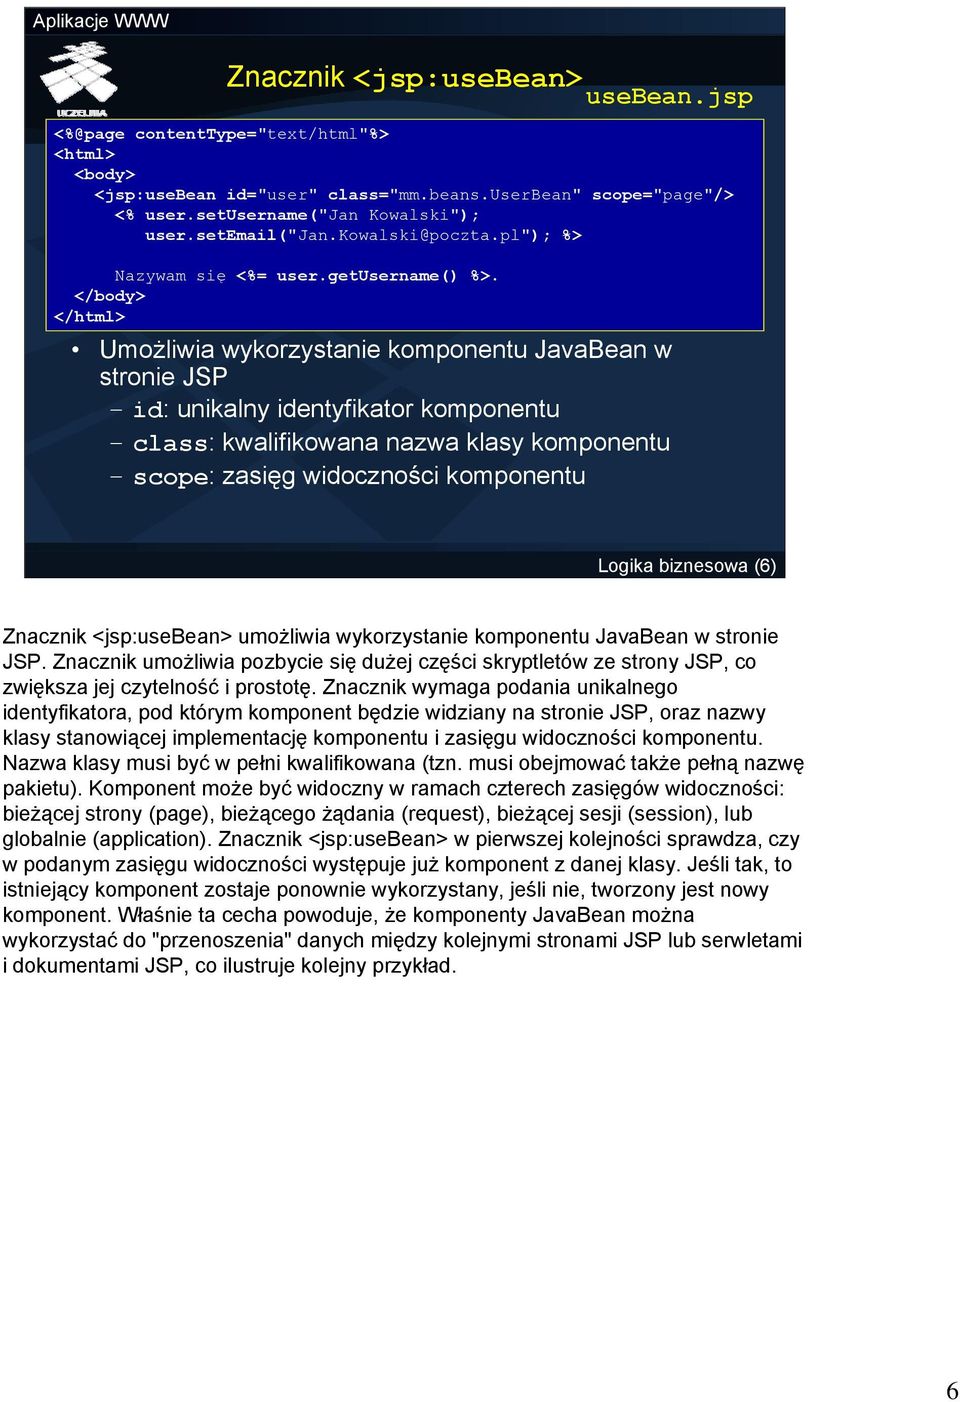 </body> </html> Umożliwia wykorzystanie komponentu JavaBean w stronie JSP id: unikalny identyfikator komponentu class: kwalifikowana nazwa klasy komponentu scope: zasięg widoczności komponentu Logika